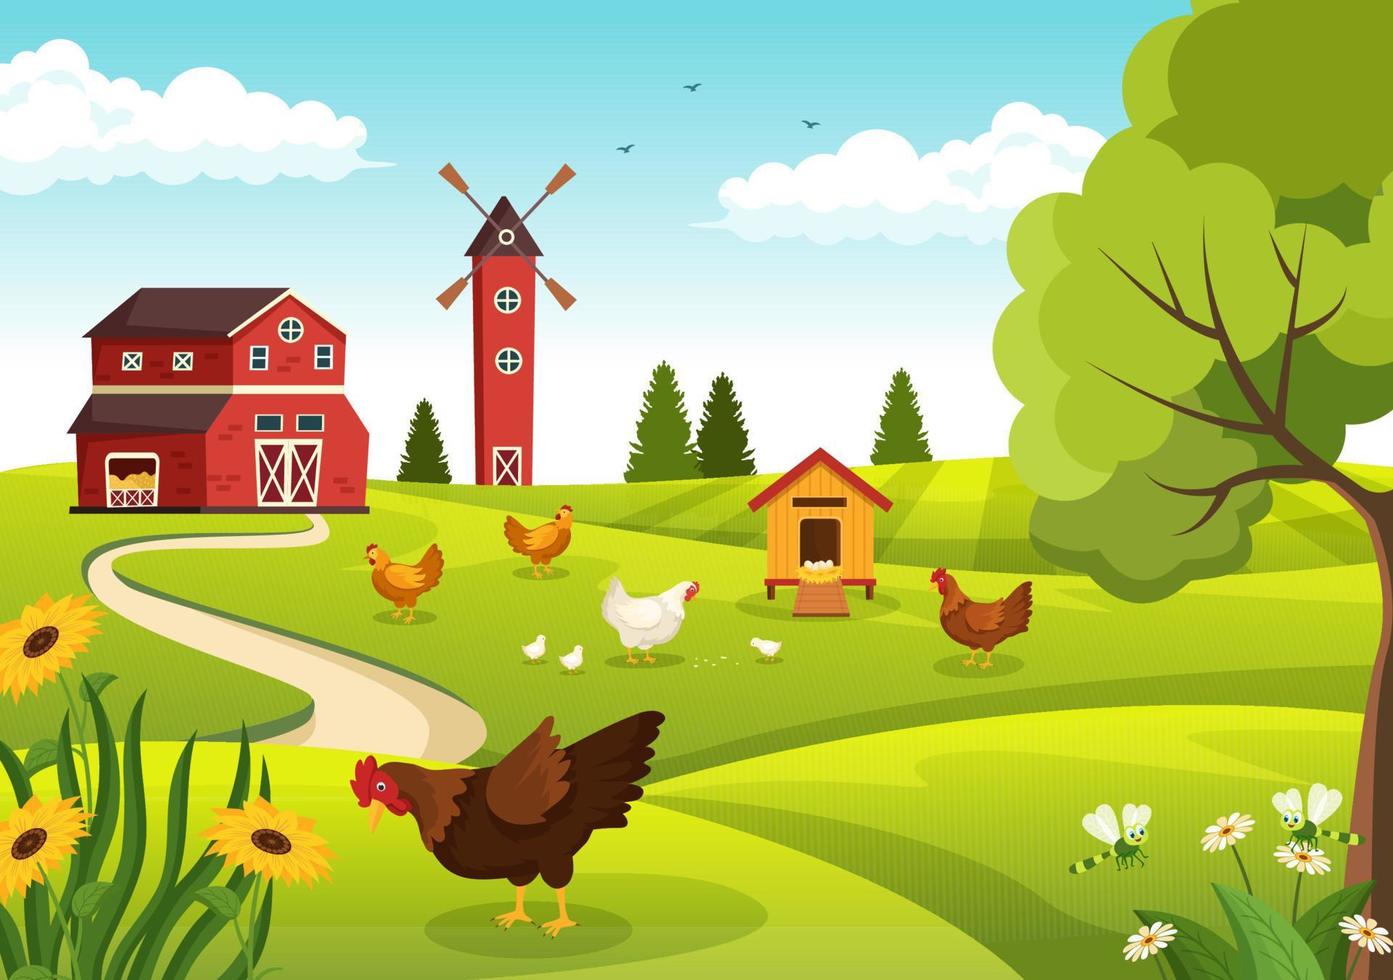 avicultura con granjero, jaula, pollo y granja de huevos en la vista de fondo de campo verde en la ilustración de plantilla de dibujos animados lindo dibujado a mano vector